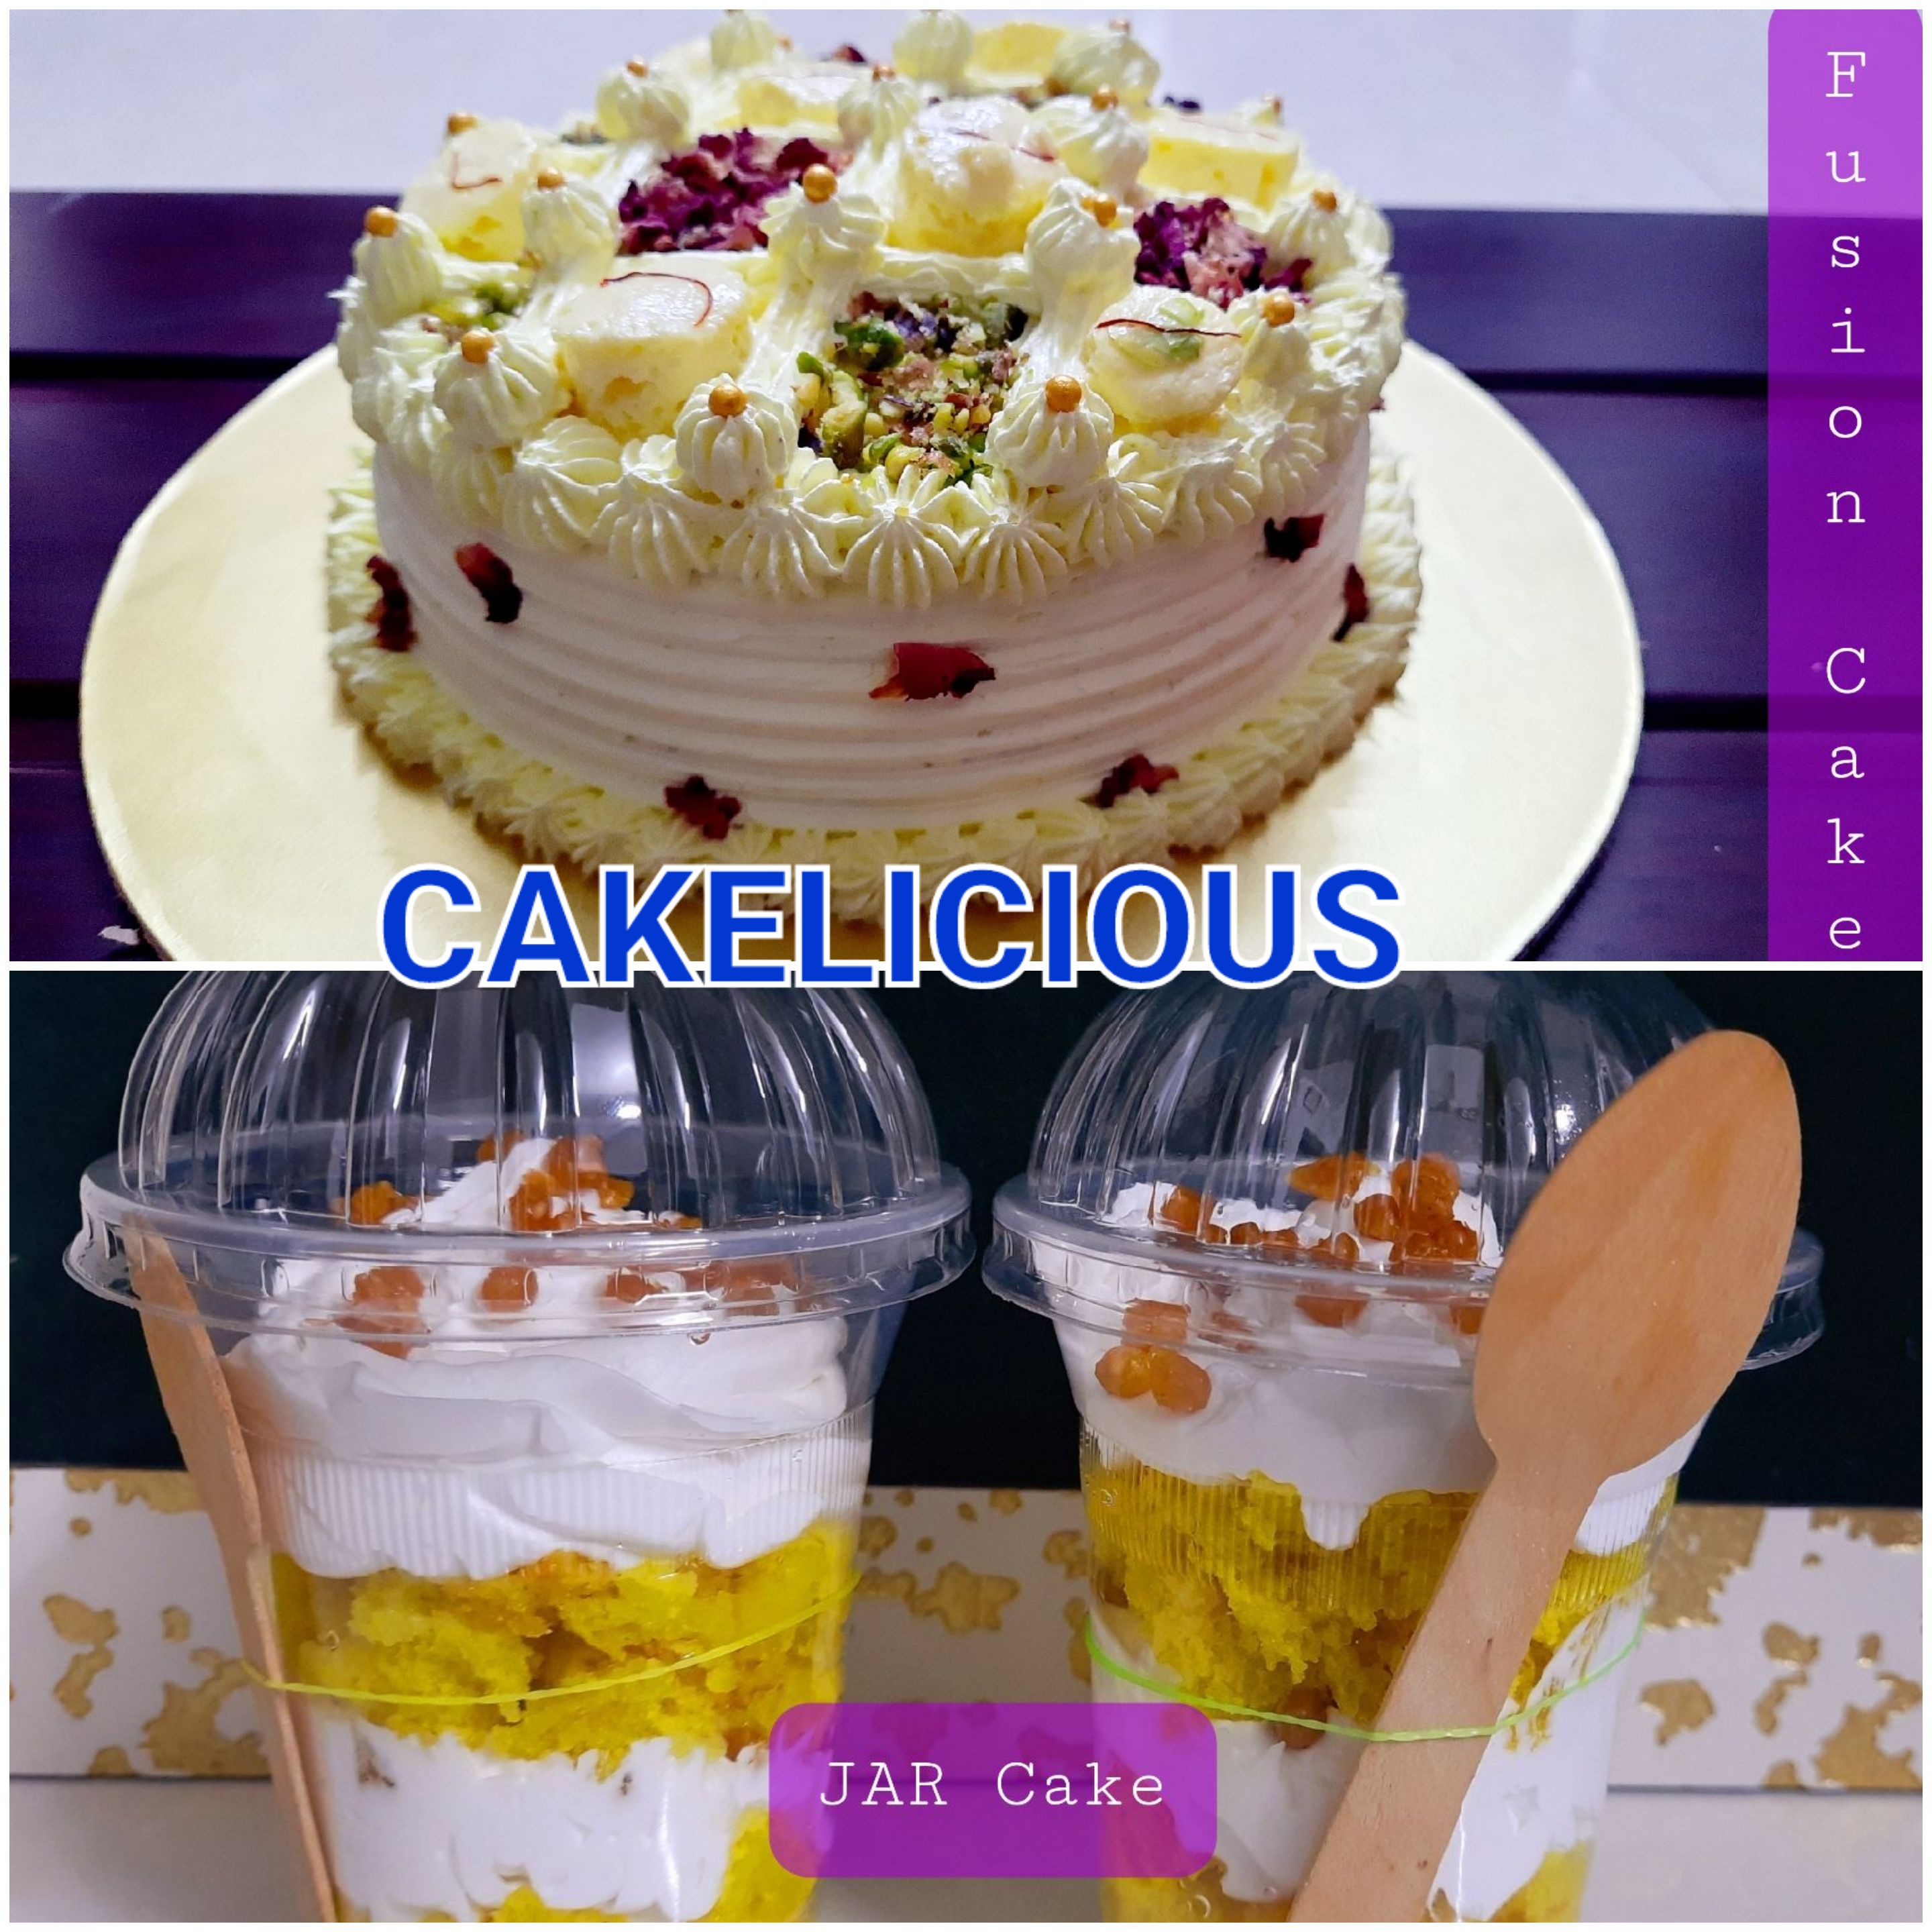 Cake A licious - Reviews, Photos and Phone